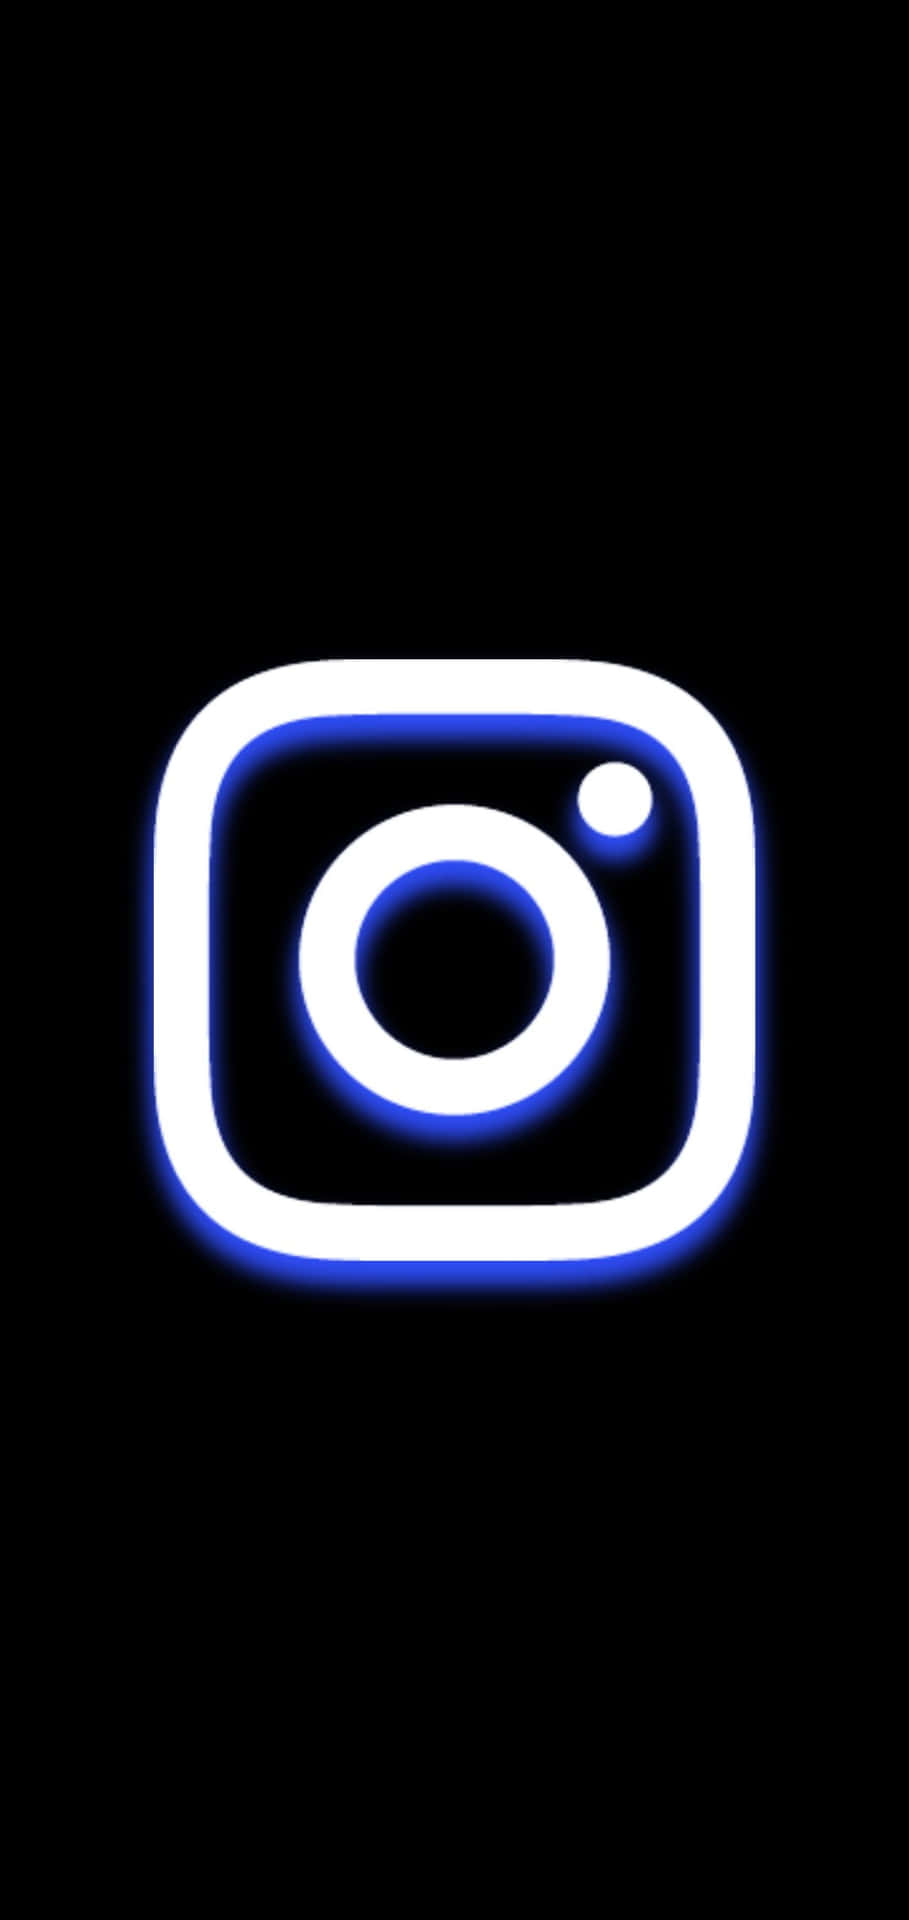 Instagramsvita Och Blåa Logotyp På Svart Bakgrund.